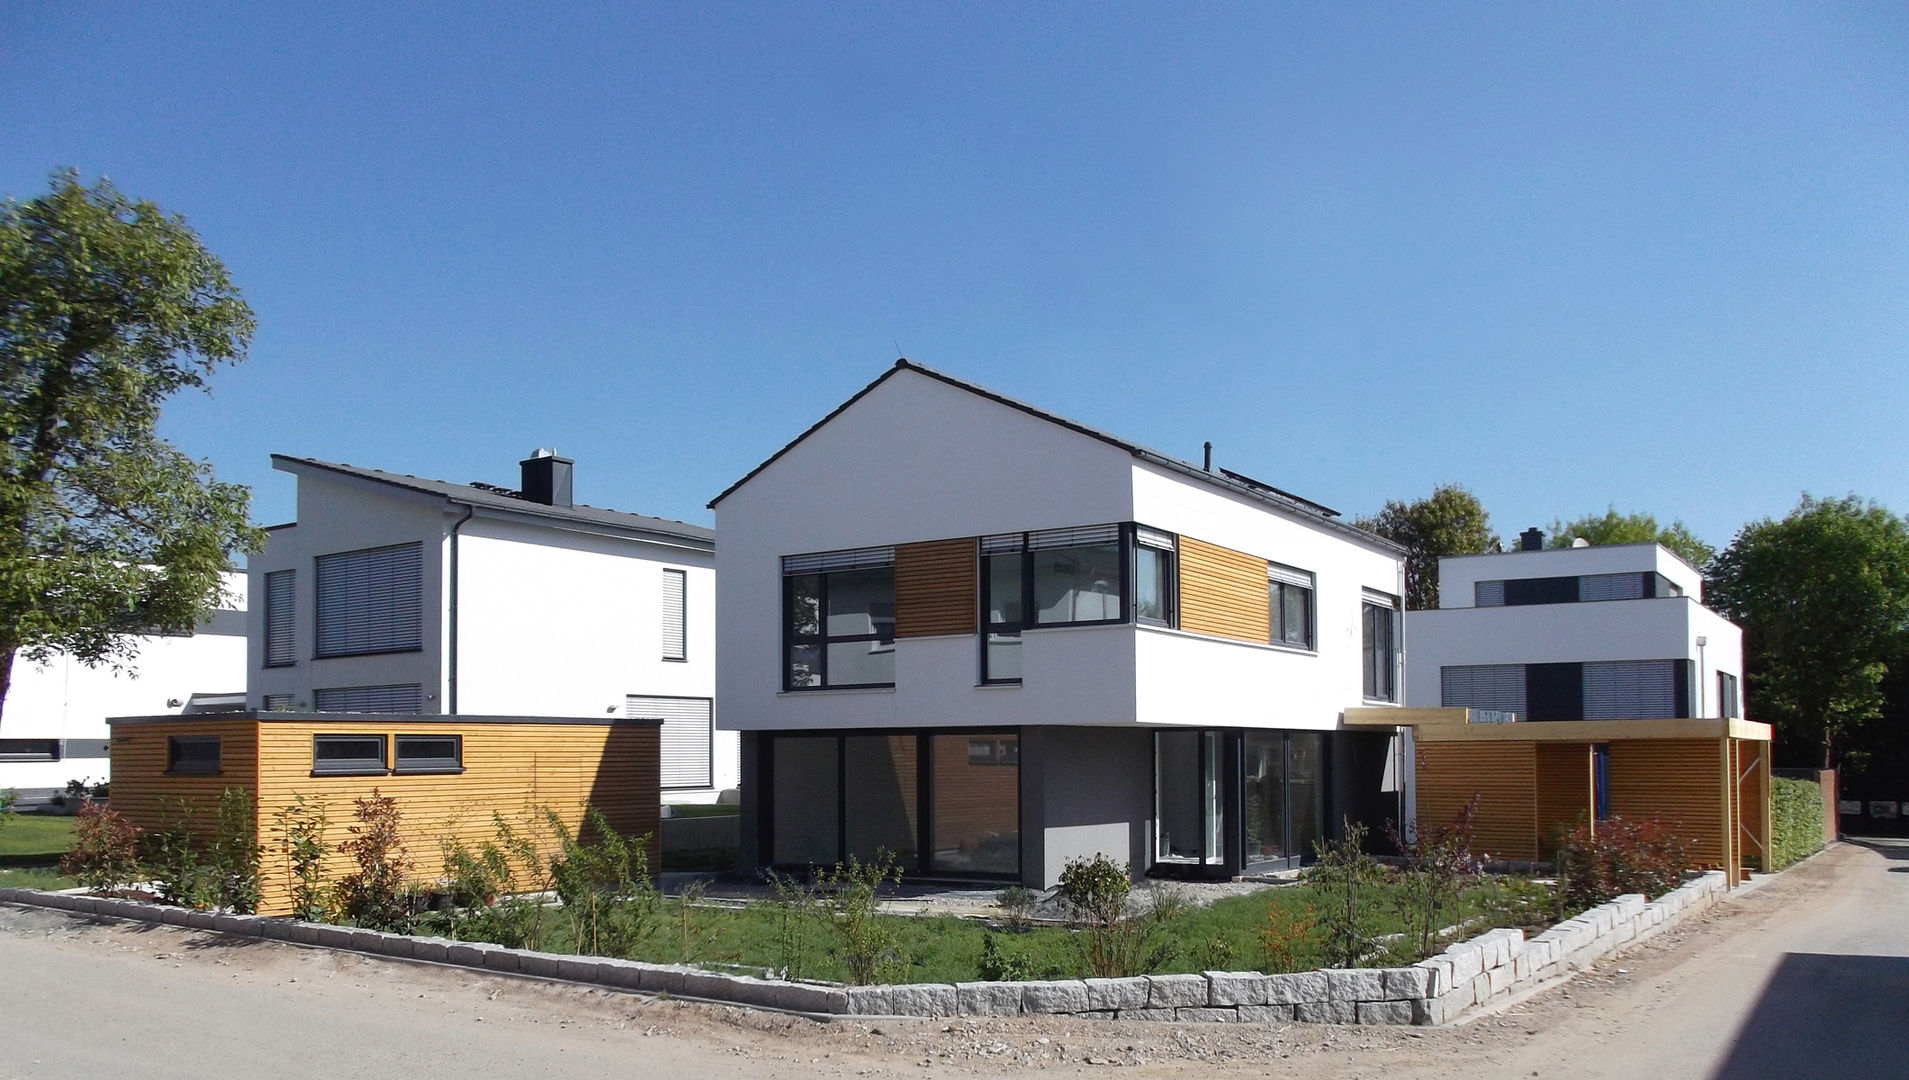 Einfamilienhaus in Steinbach, lauth : van holst architekten lauth : van holst architekten Modern houses